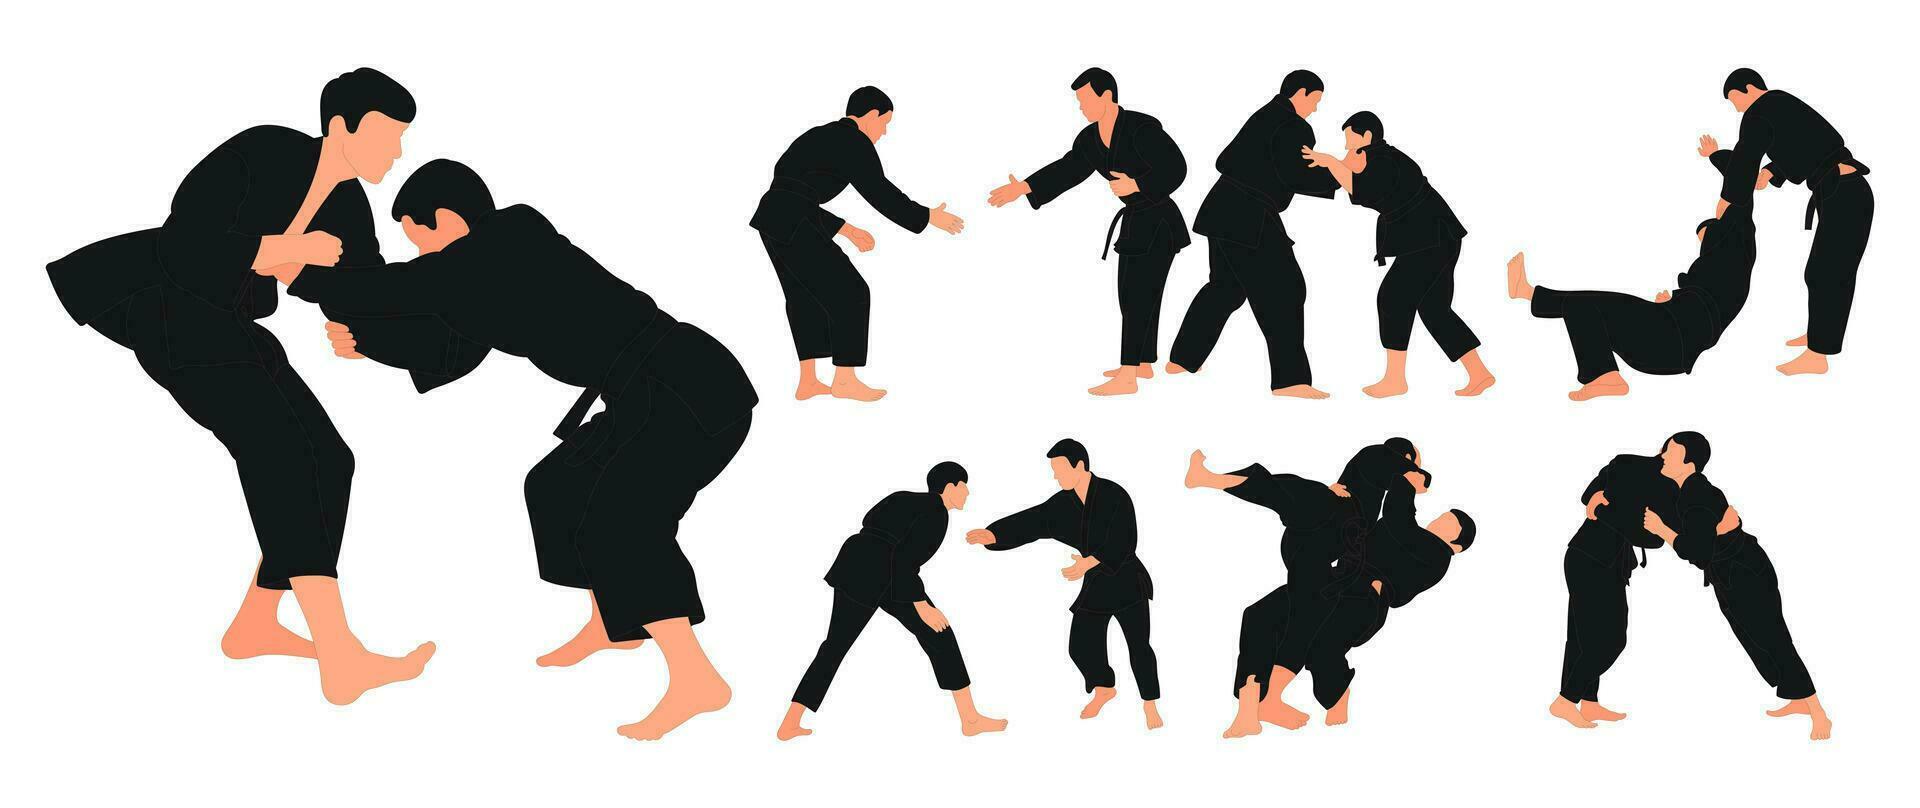 linea schizzo judoista, judoka, atleta duello, combattere, judo, sport figura, isolato vettore